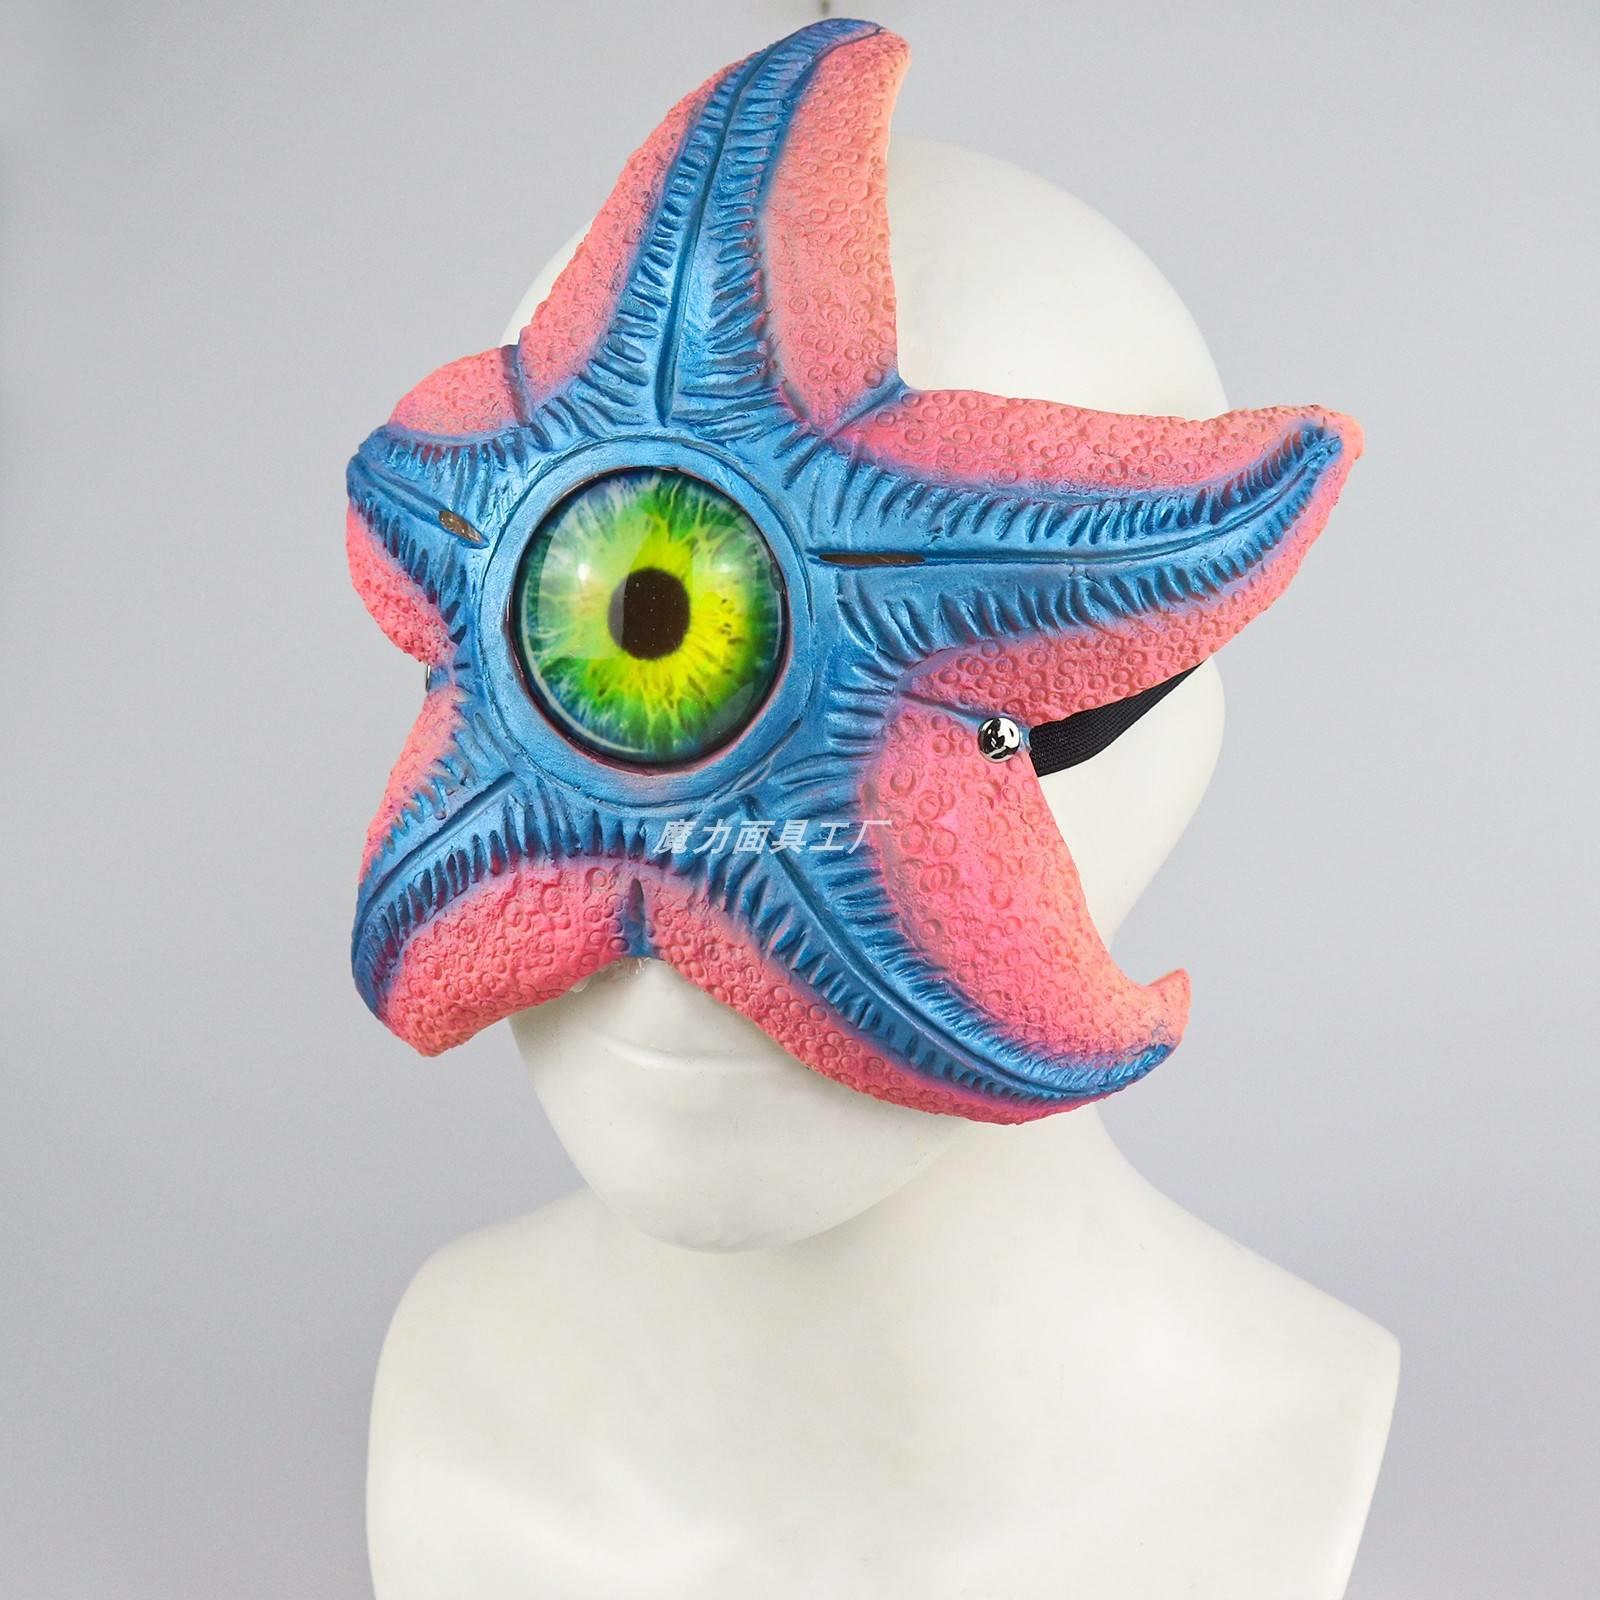 独眼海星面罩海洋生物面具儿童搞笑单眼搞怪沙雕动物虚空之眼头套